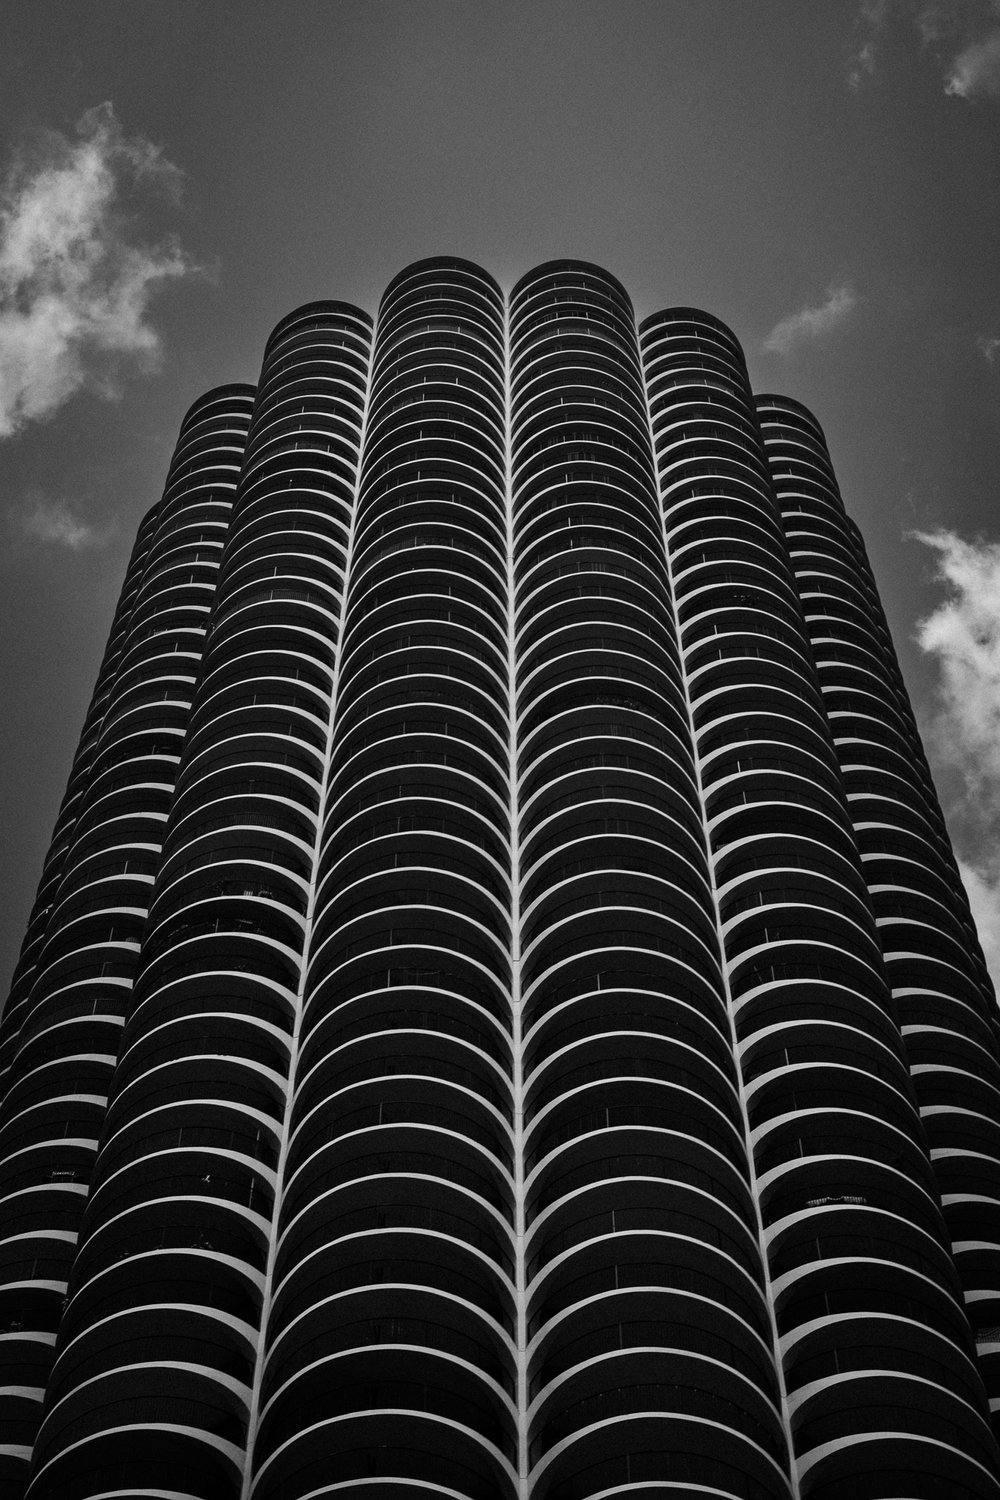 Chicago-6.jpg